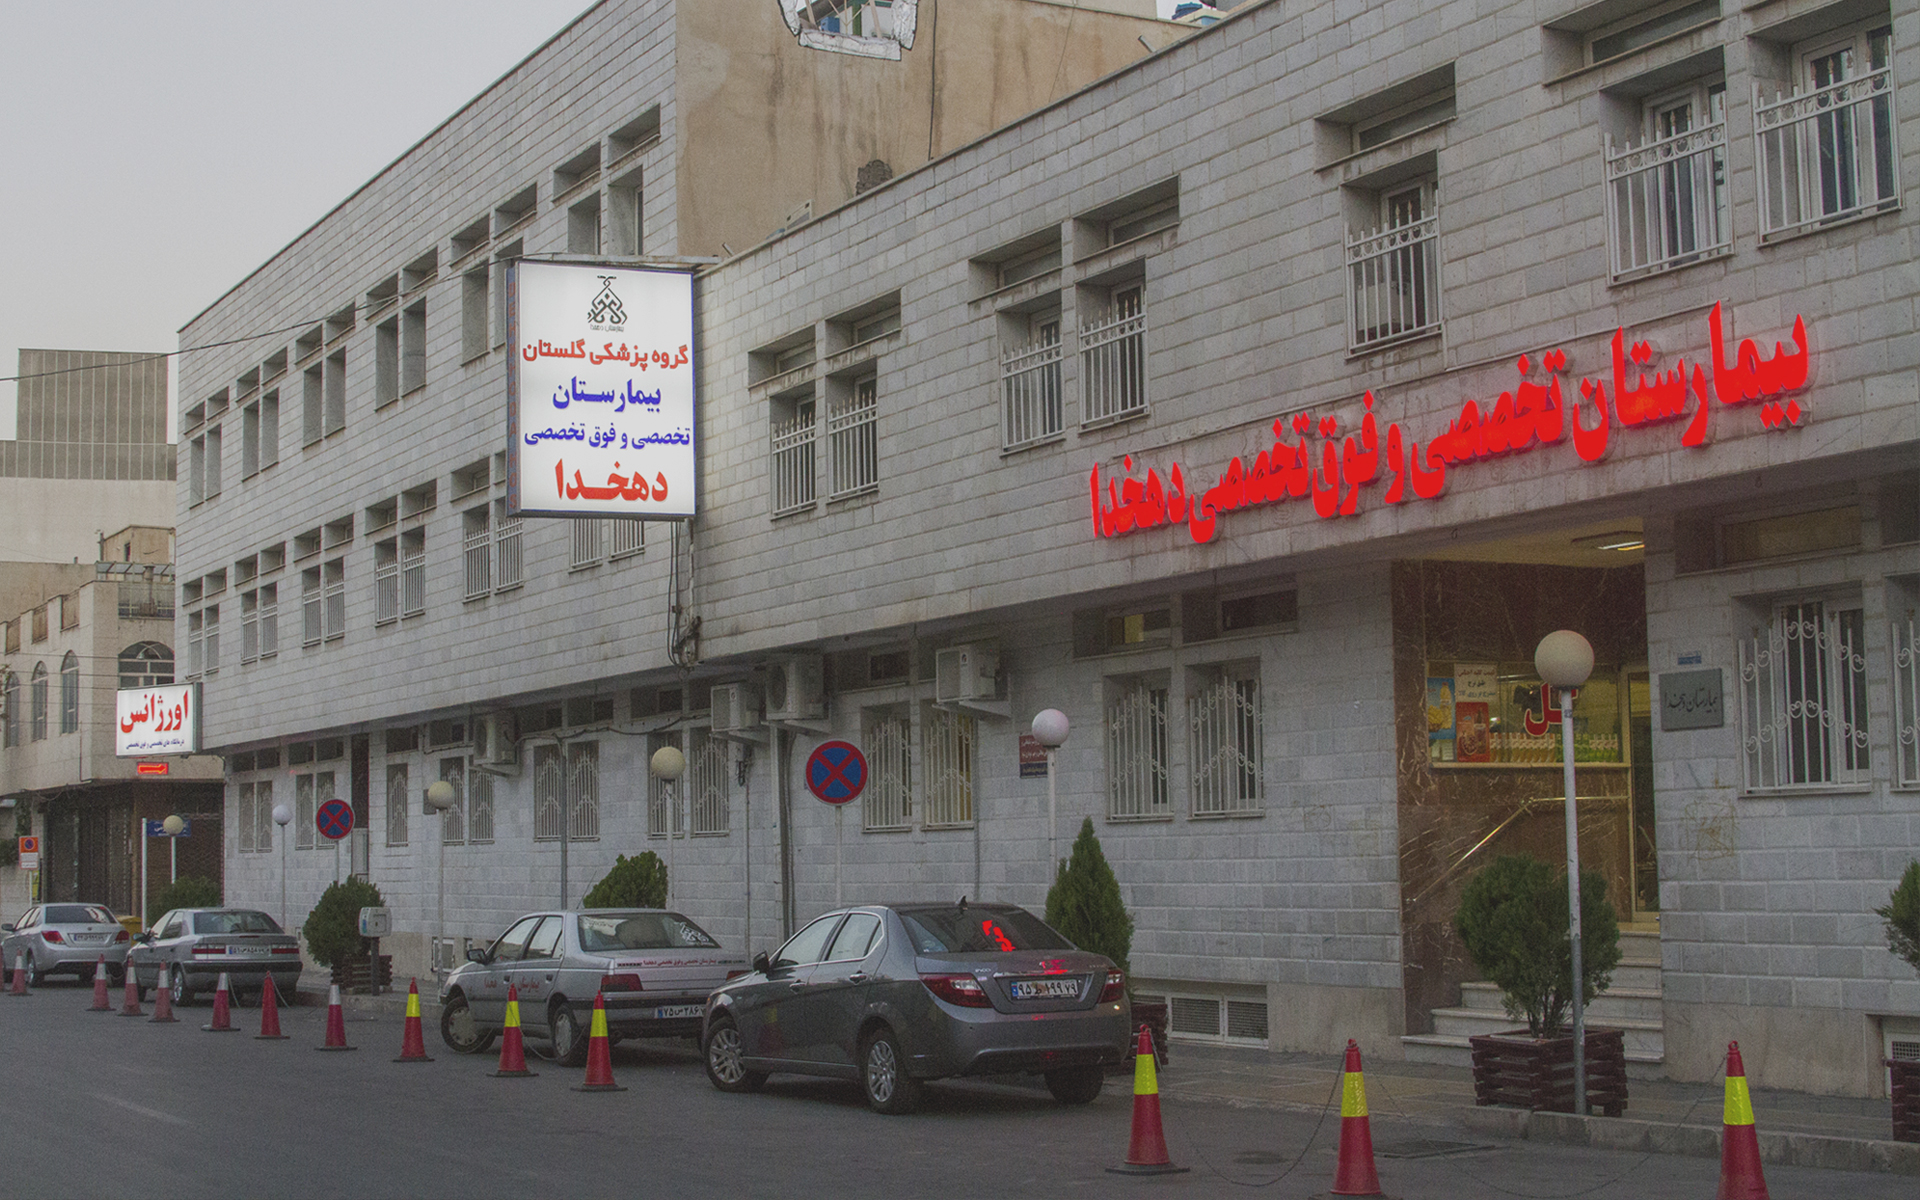 آدرس بیمارستان دهخدا در قزوین
